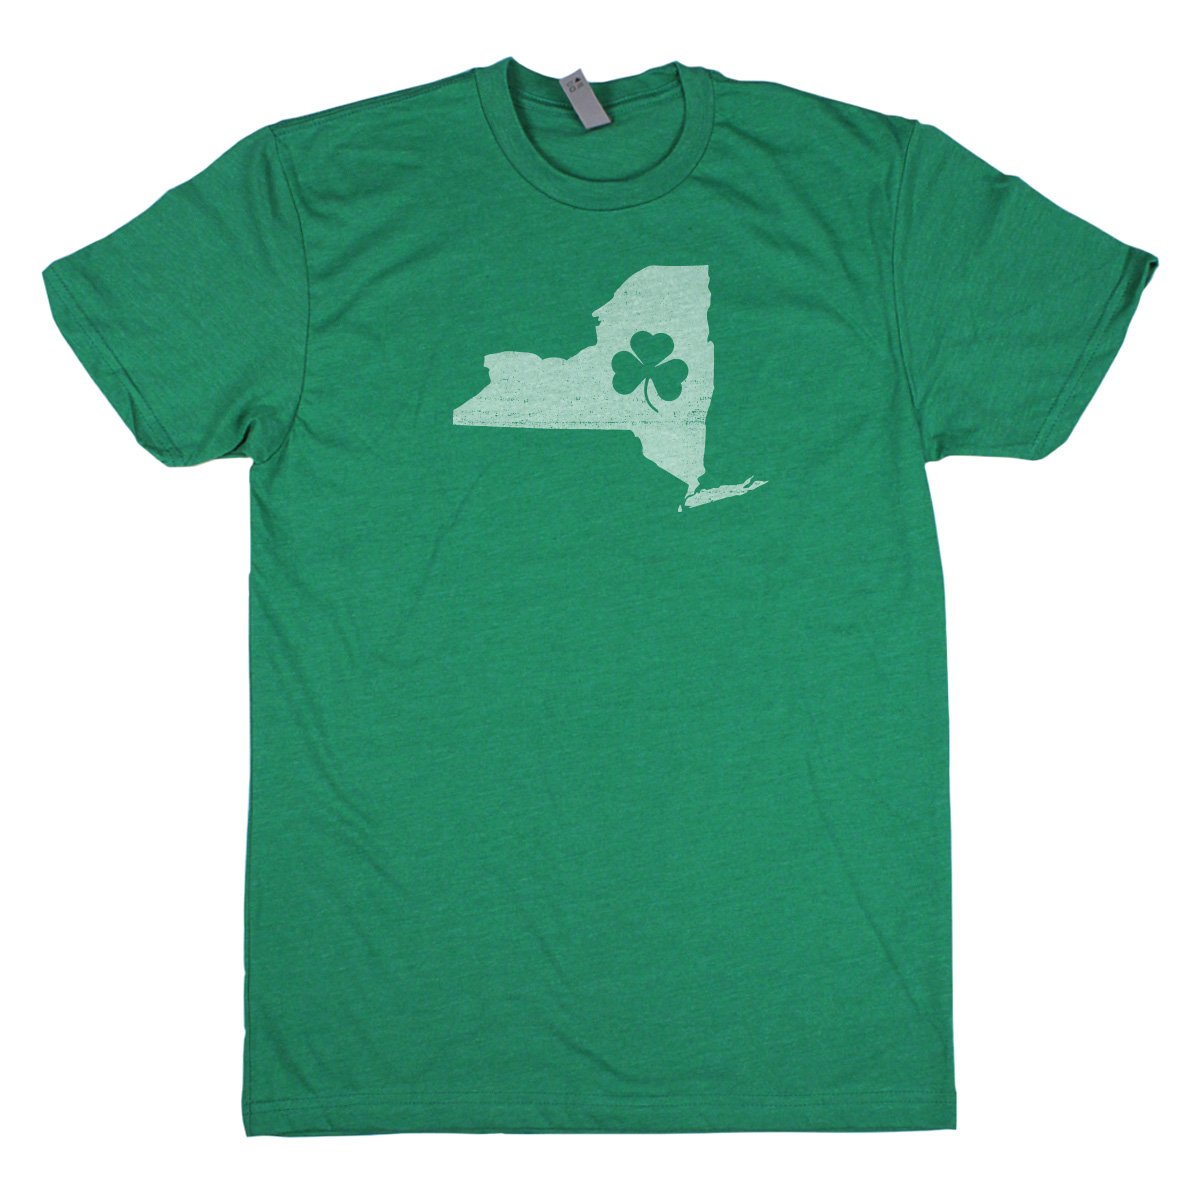 Shamrock Men's Unisex T-Shirt - New York